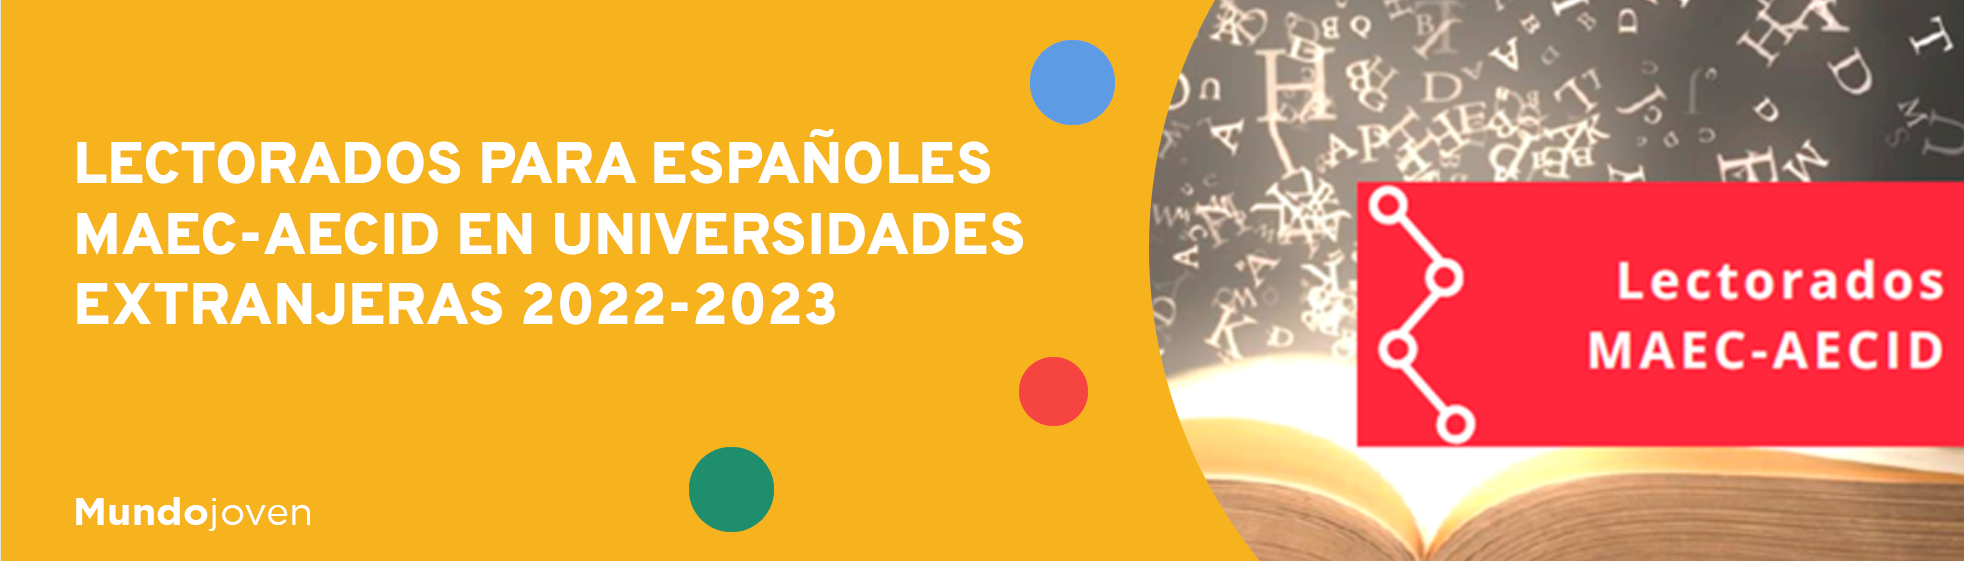 Lectorados para españoles MAEC-AECID en universidades extranjeras 2022-2023